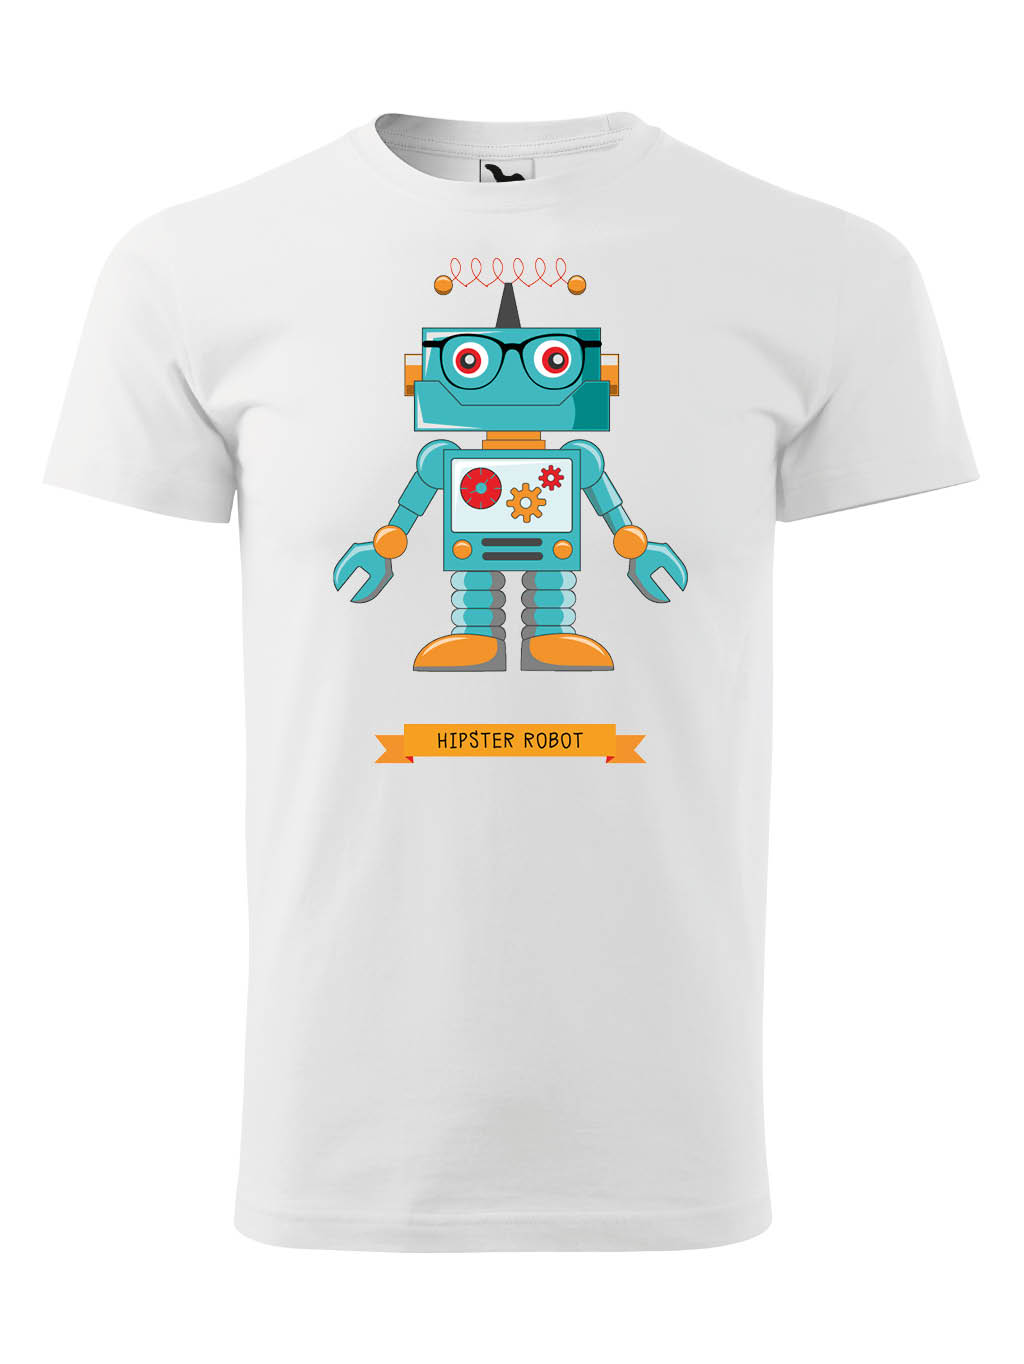 Praďoch Tričko s potiskem Hipster Robot Pohlaví: Dětské tričko, Barva textilu: Bílá